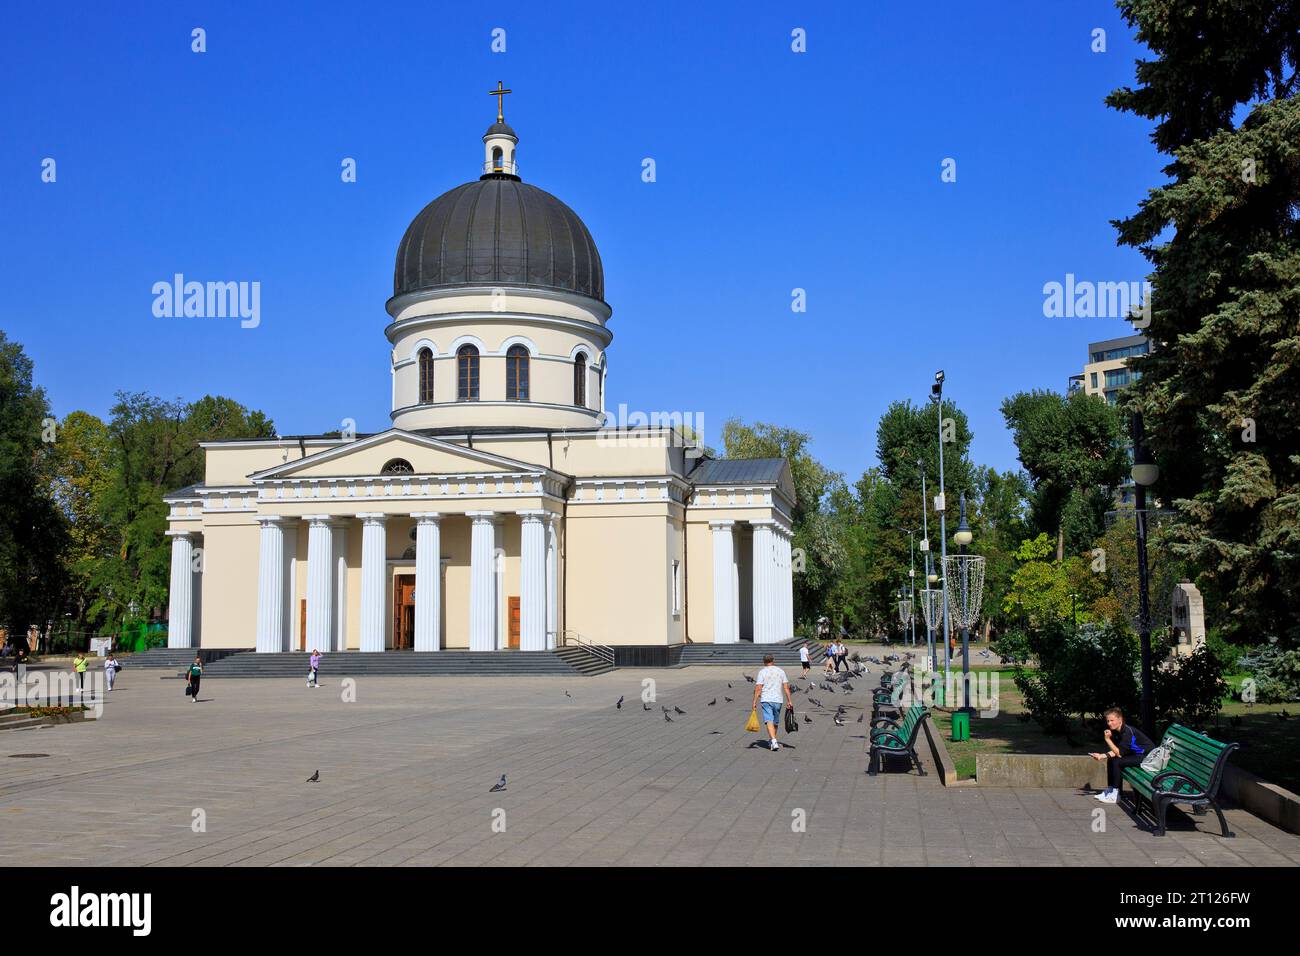 La cathédrale orthodoxe orientale de la Nativité (1836) à Chisinau, Moldavie Banque D'Images